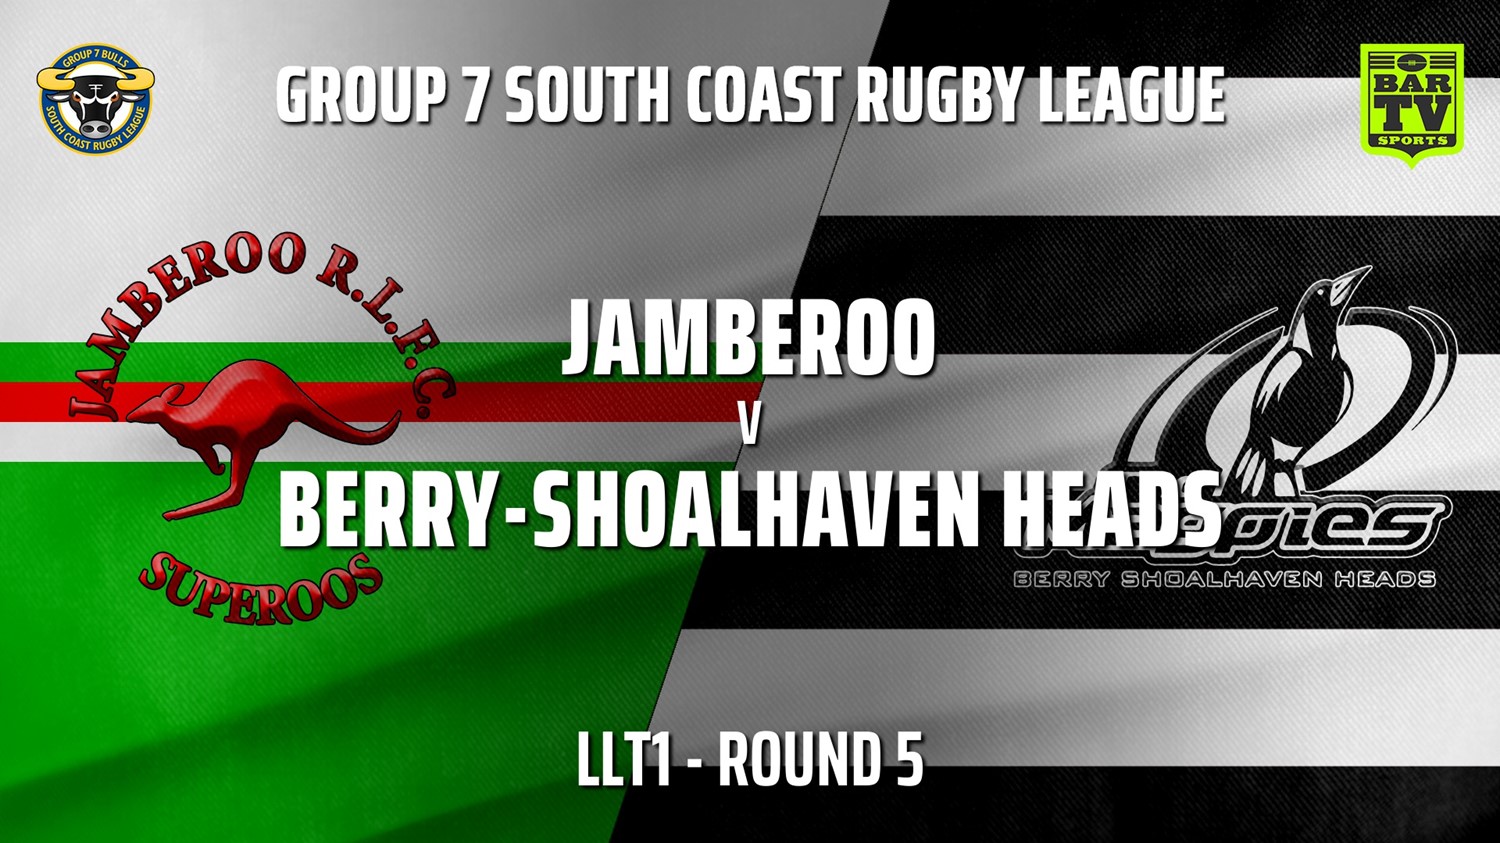 210515-Group 7 RL Round 5 - LLT1 - Jamberoo v Berry-Shoalhaven Heads (1) Slate Image